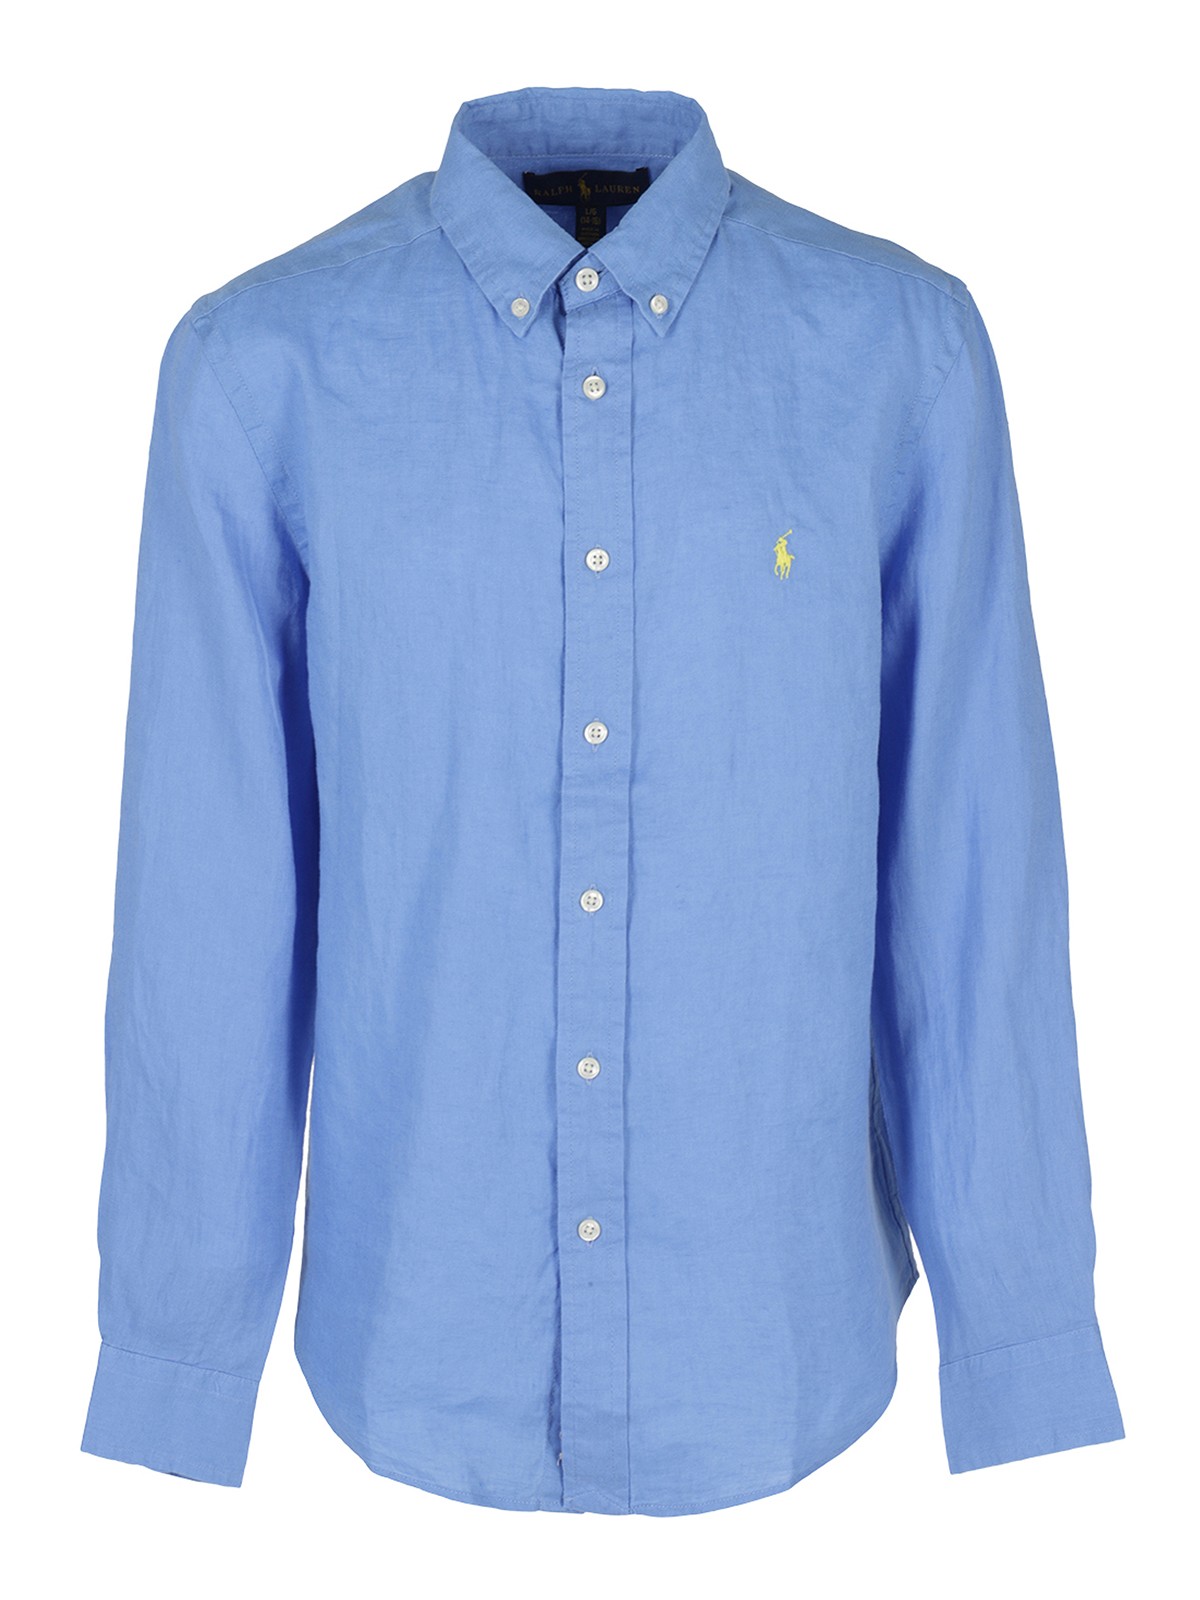 Shirts Polo Ralph Lauren - Linen shirt - 323832109004 | iKRIX.com